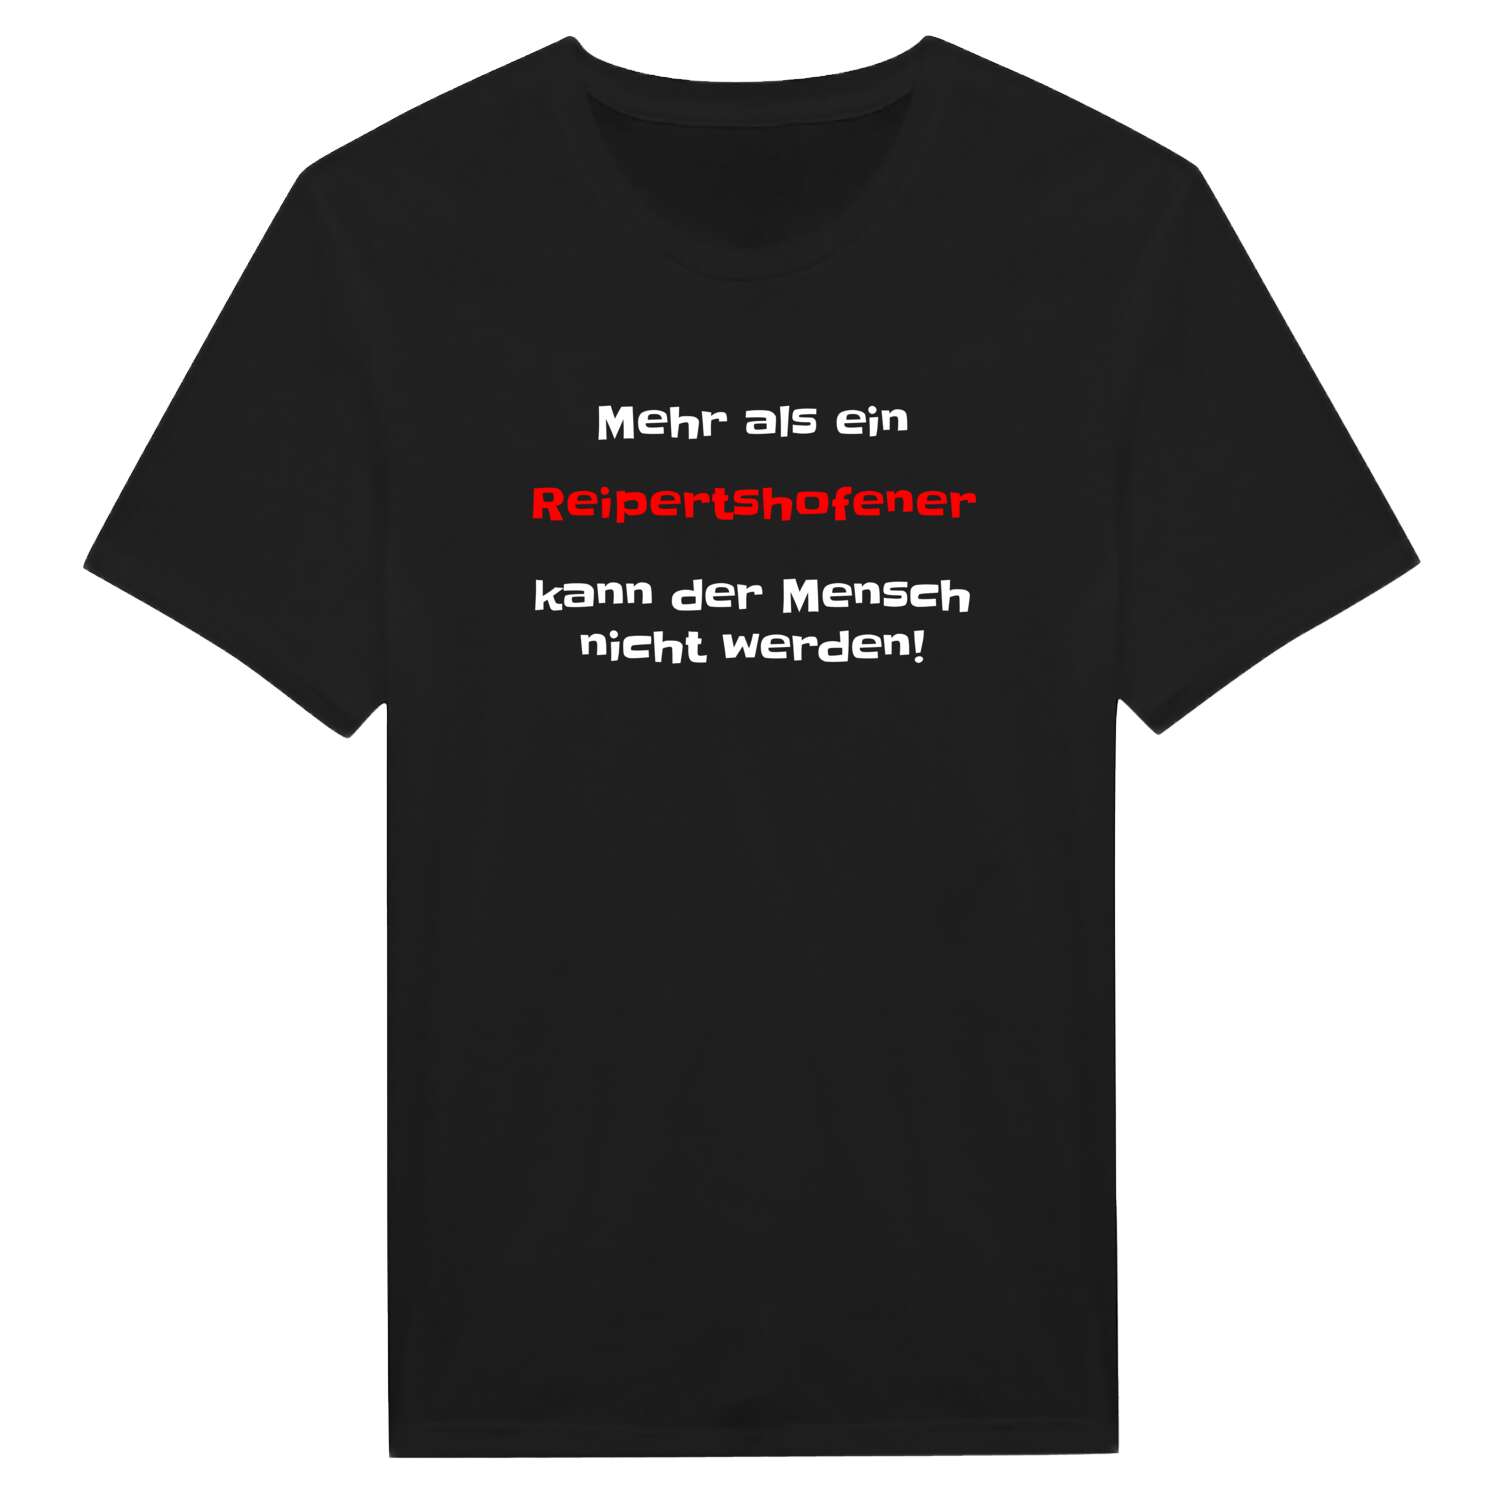 Reipertshofen T-Shirt »Mehr als ein«